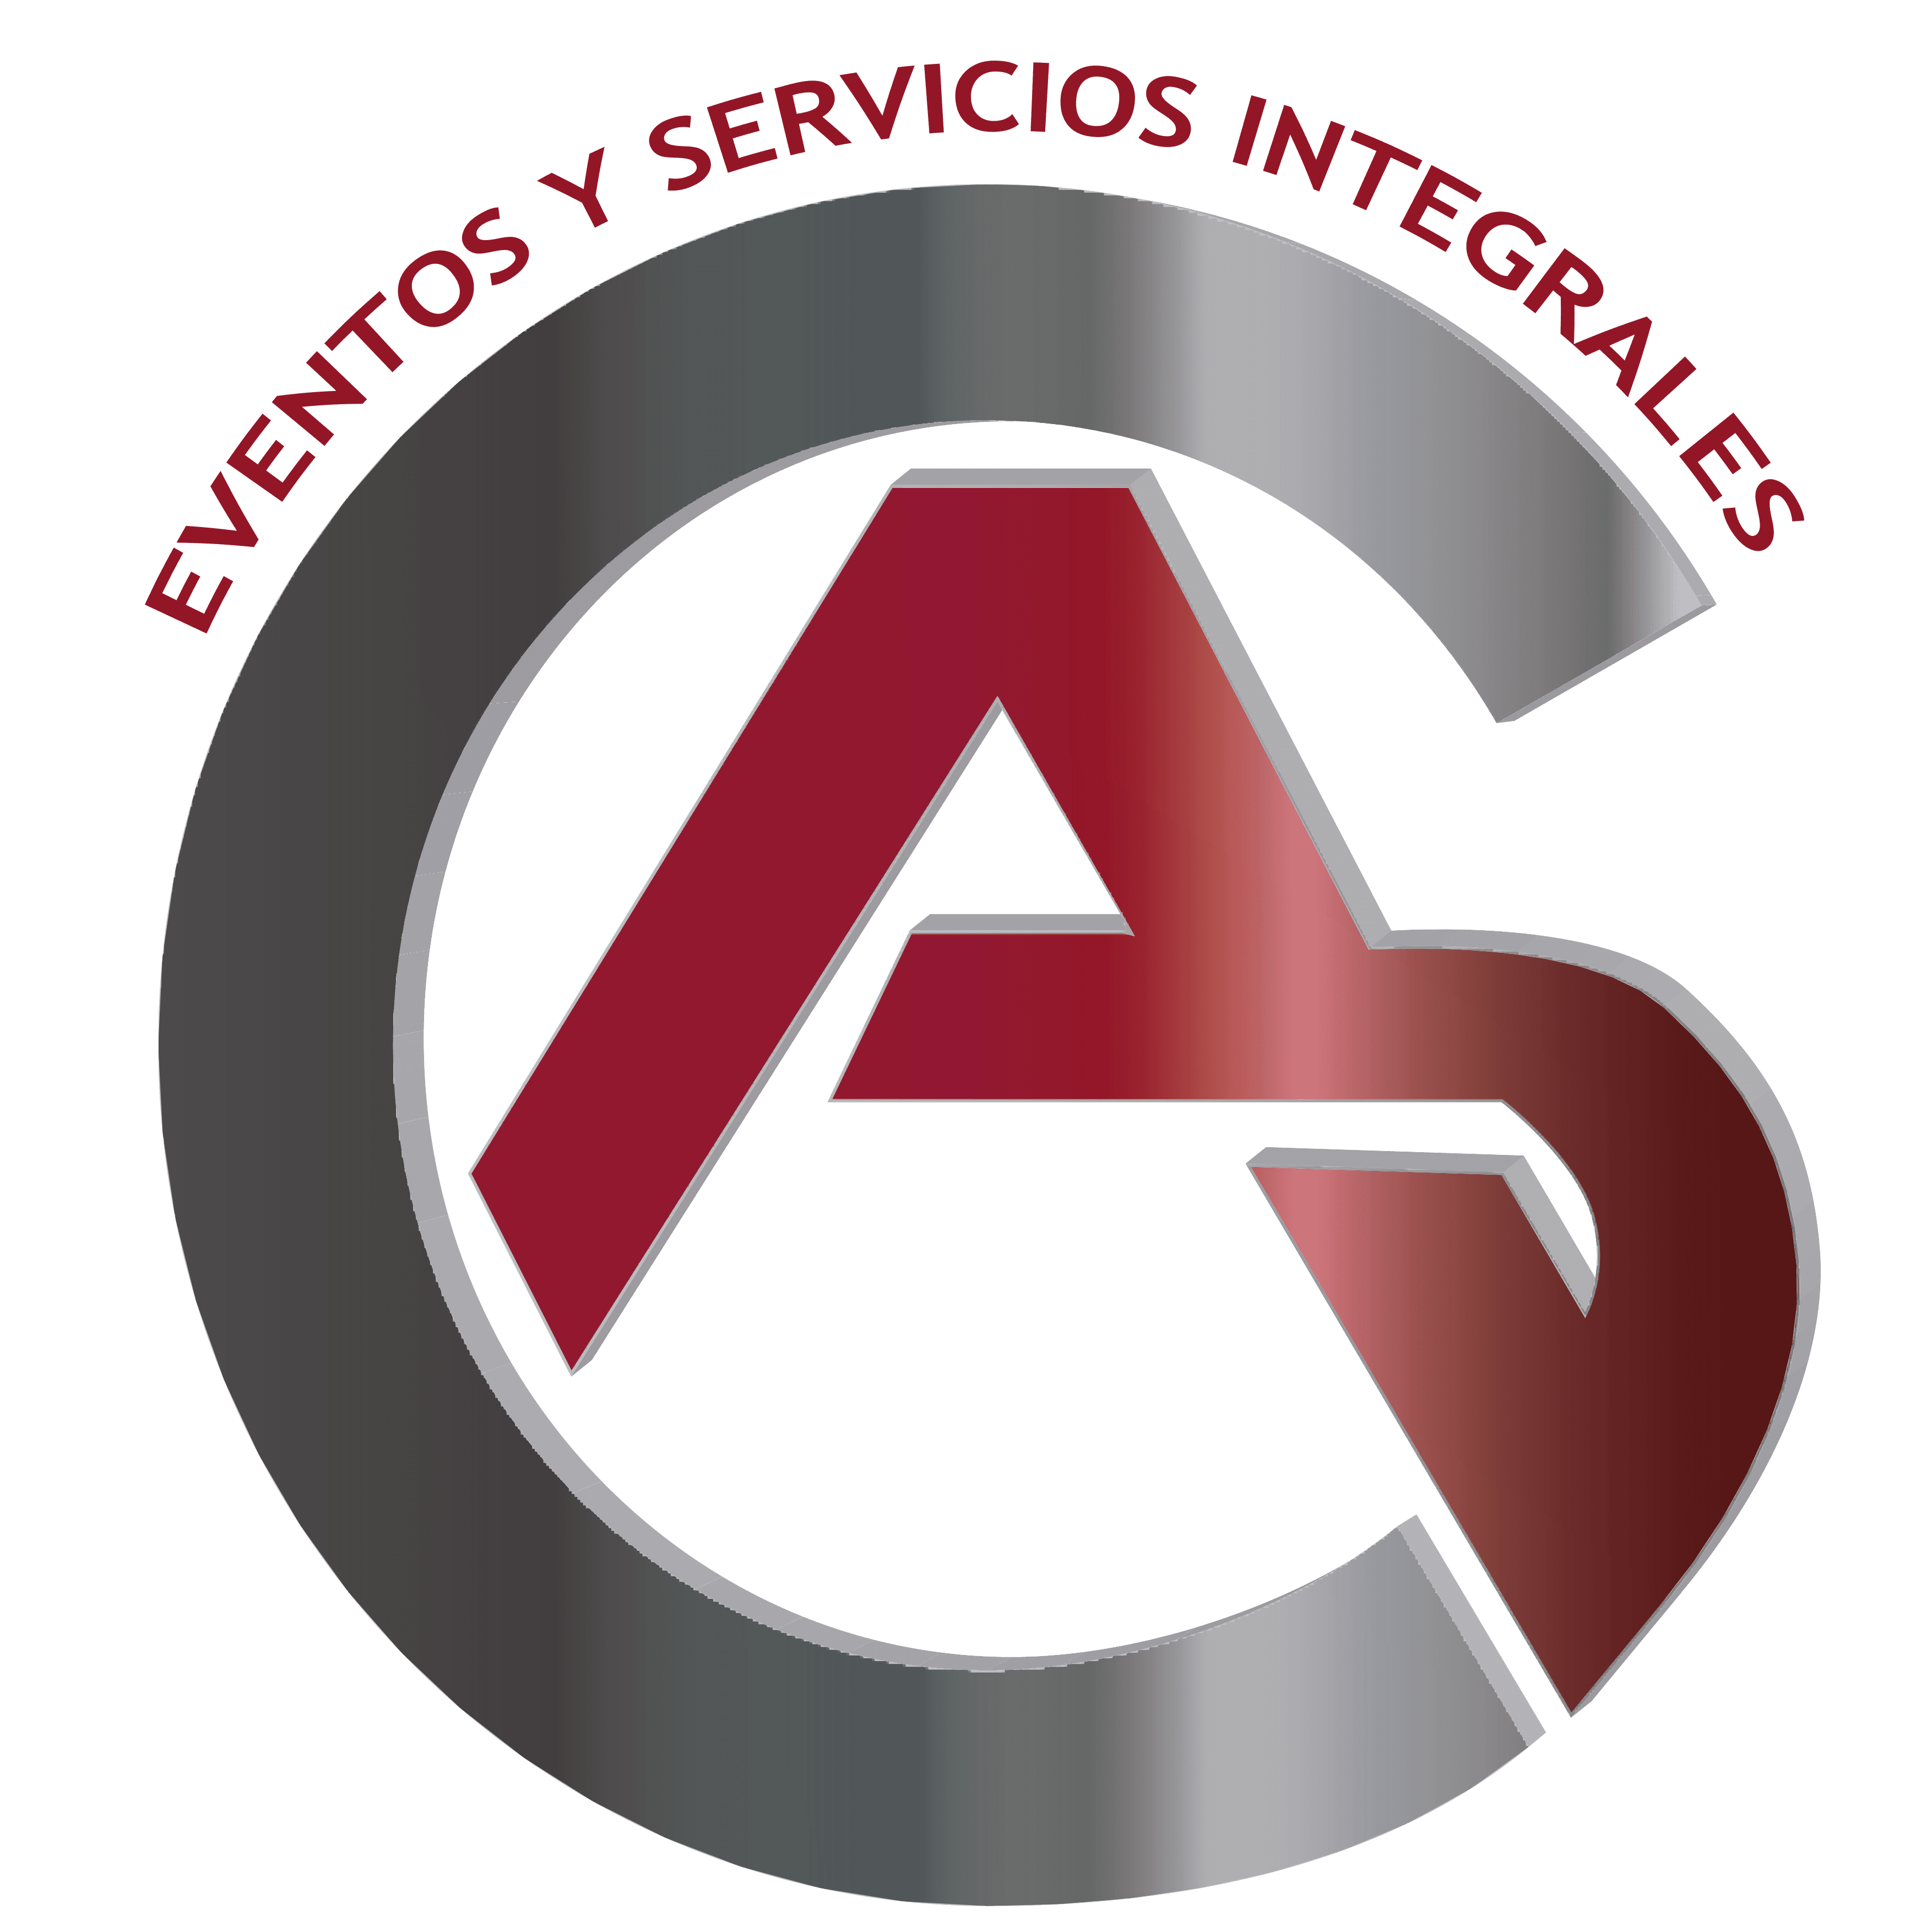 Grupo AC, Eventos y Servicios Integrales